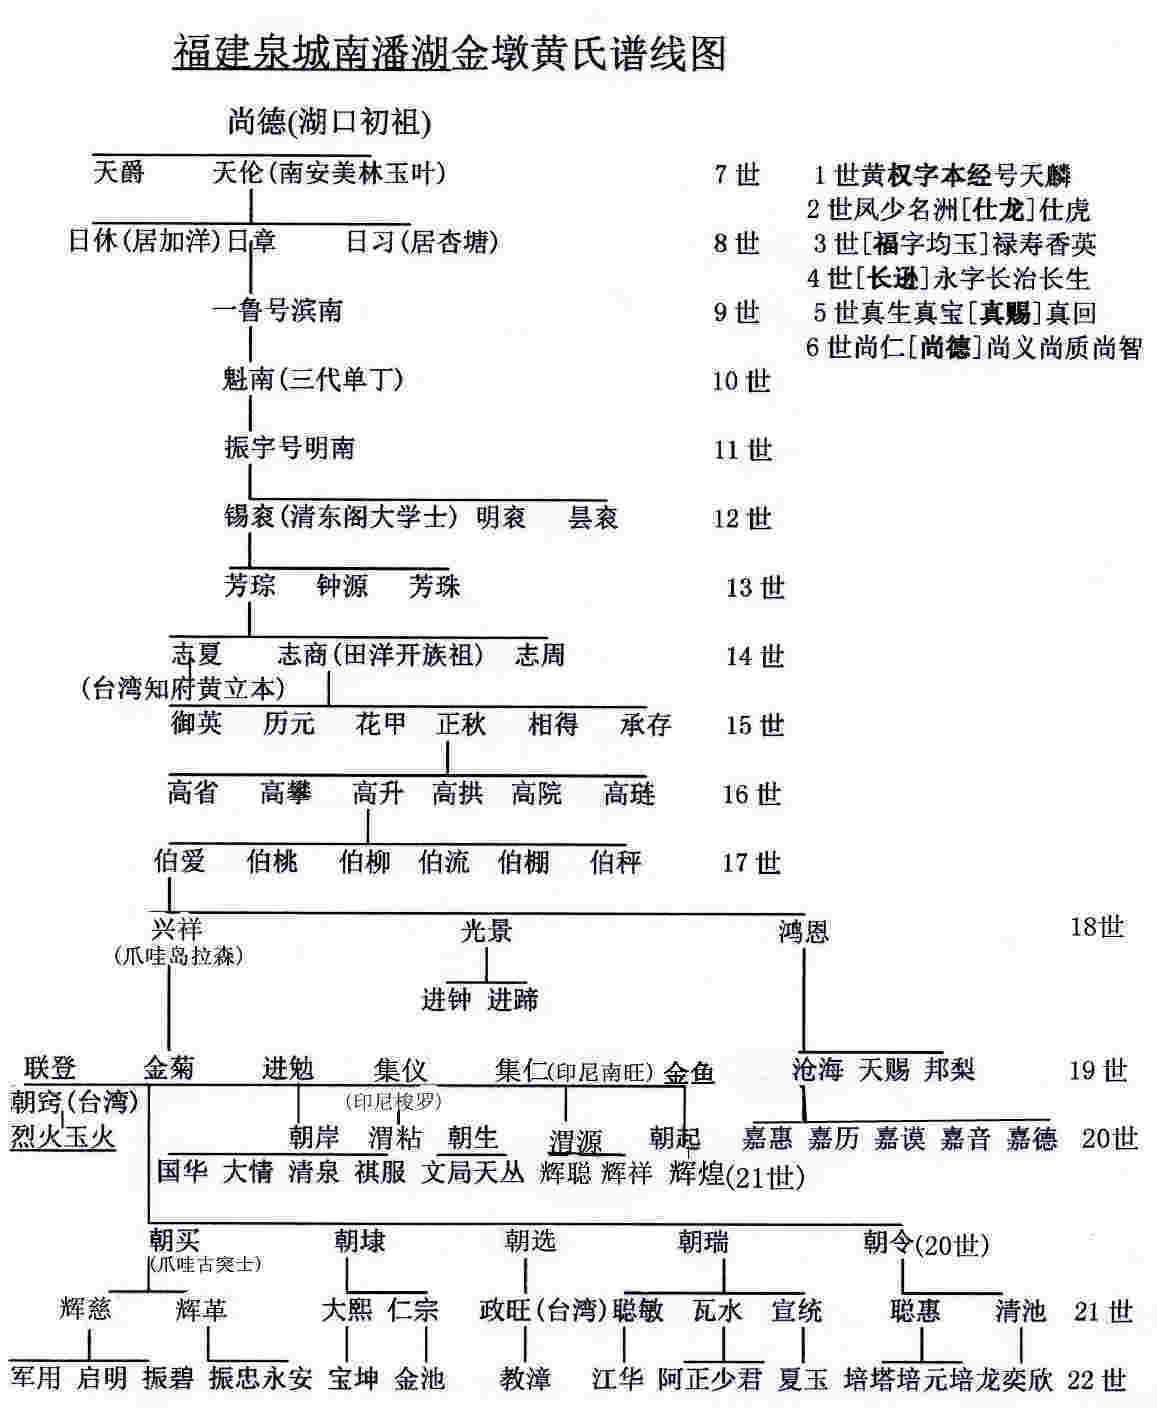 晉江潘湖黃嘉音譜線圖